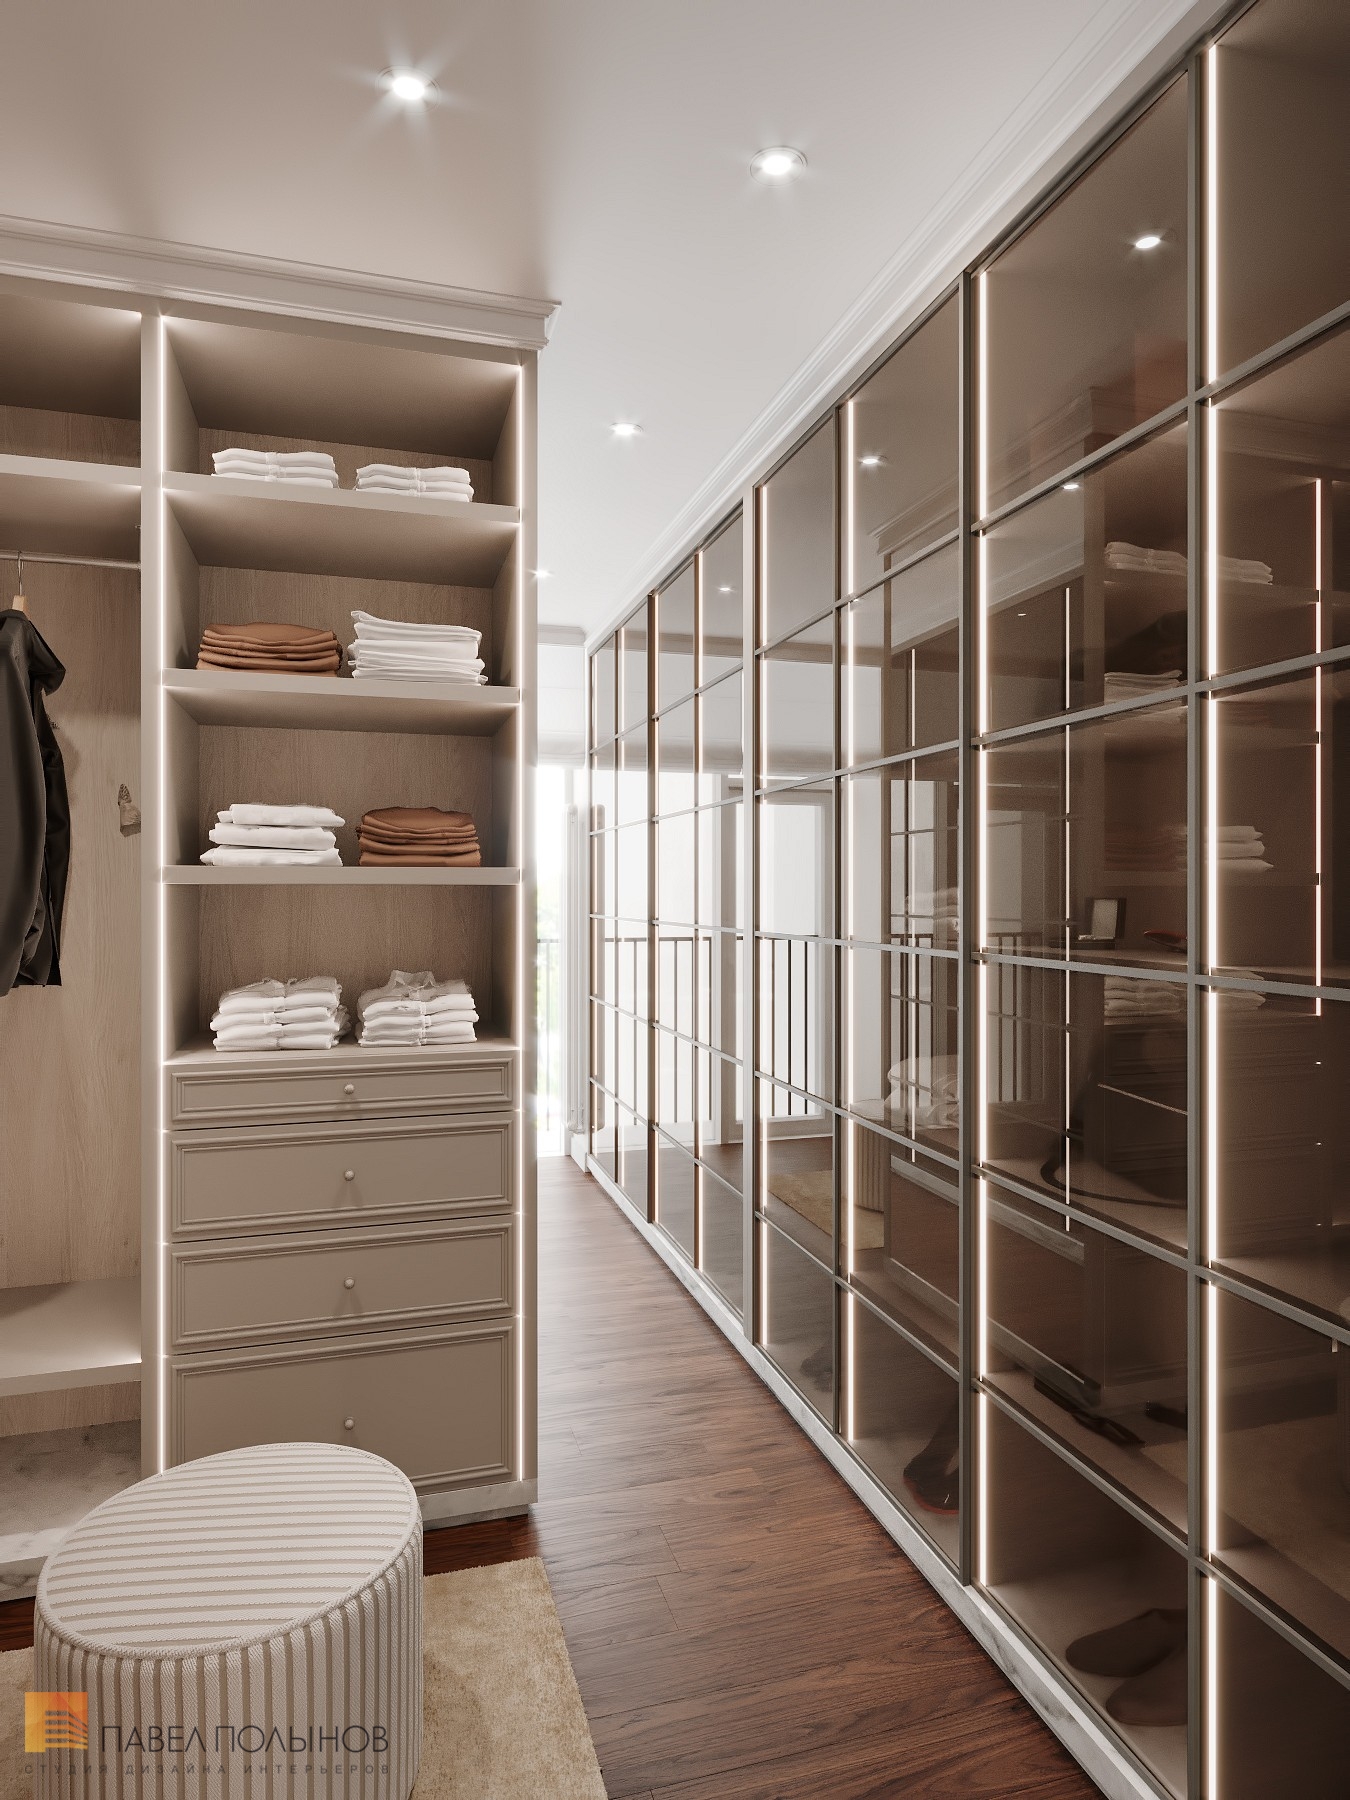 Фото дизайн гардеробной из проекта «Интерьер квартиры 200 кв.м. в стиле Ар-деко, ЖК «Граф Орлов»»